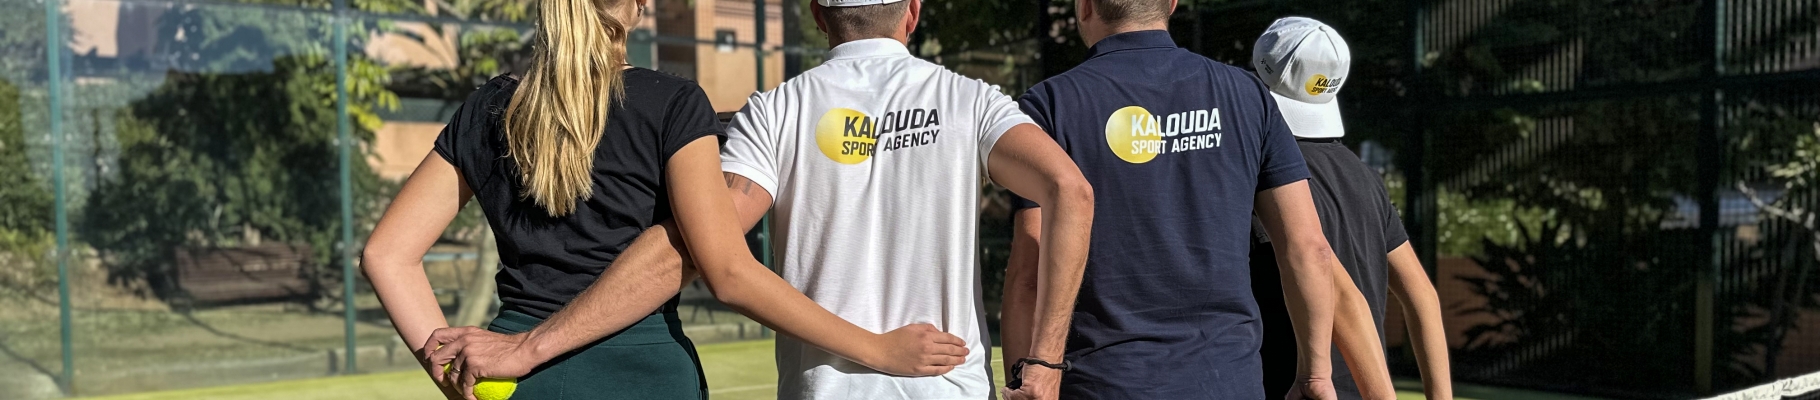 Kalouda Sport Agency tým